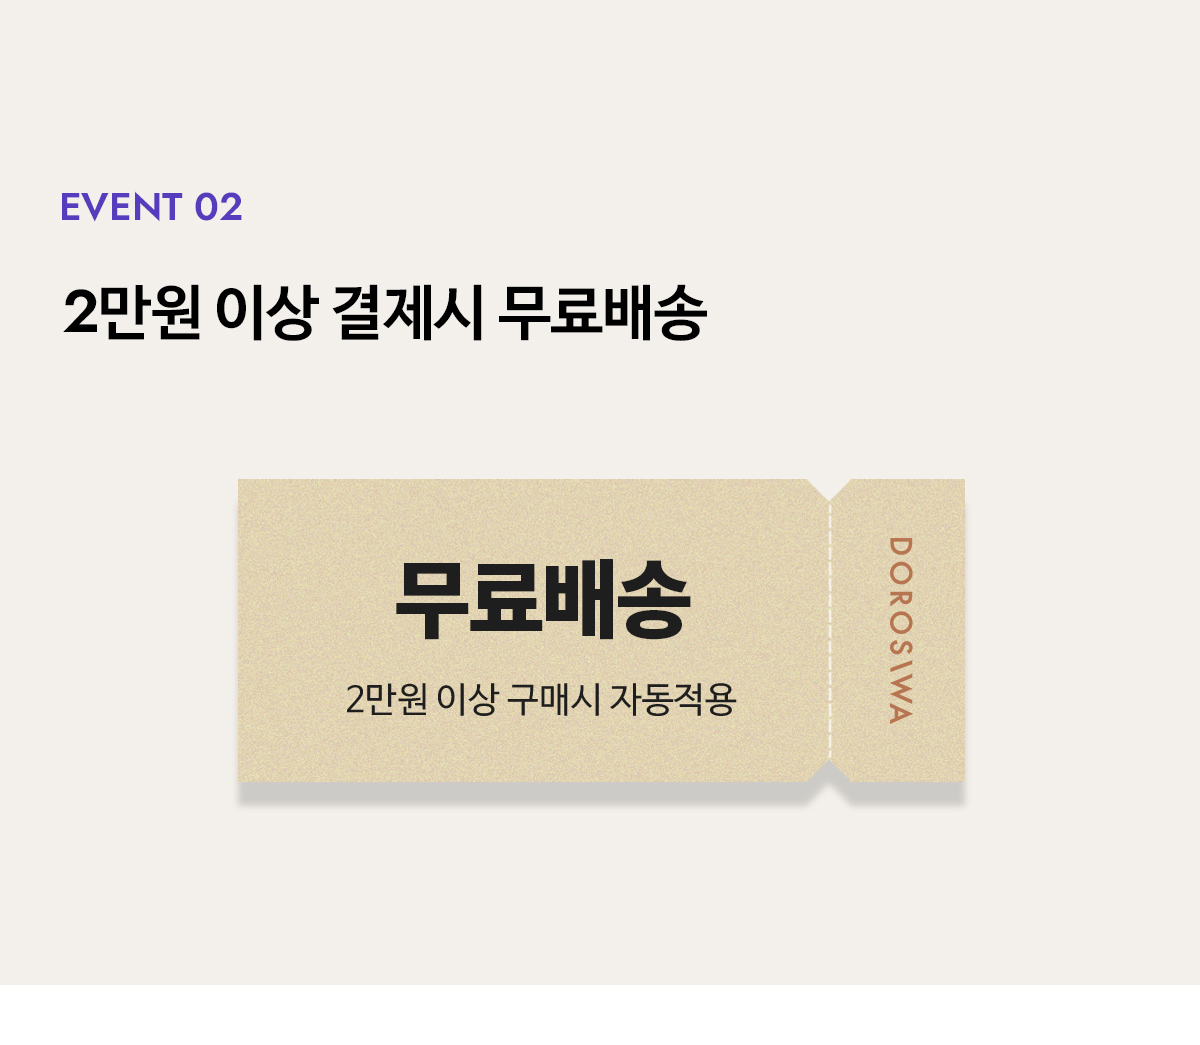 Event 02 - 2만원 이상 결제시 무료배송